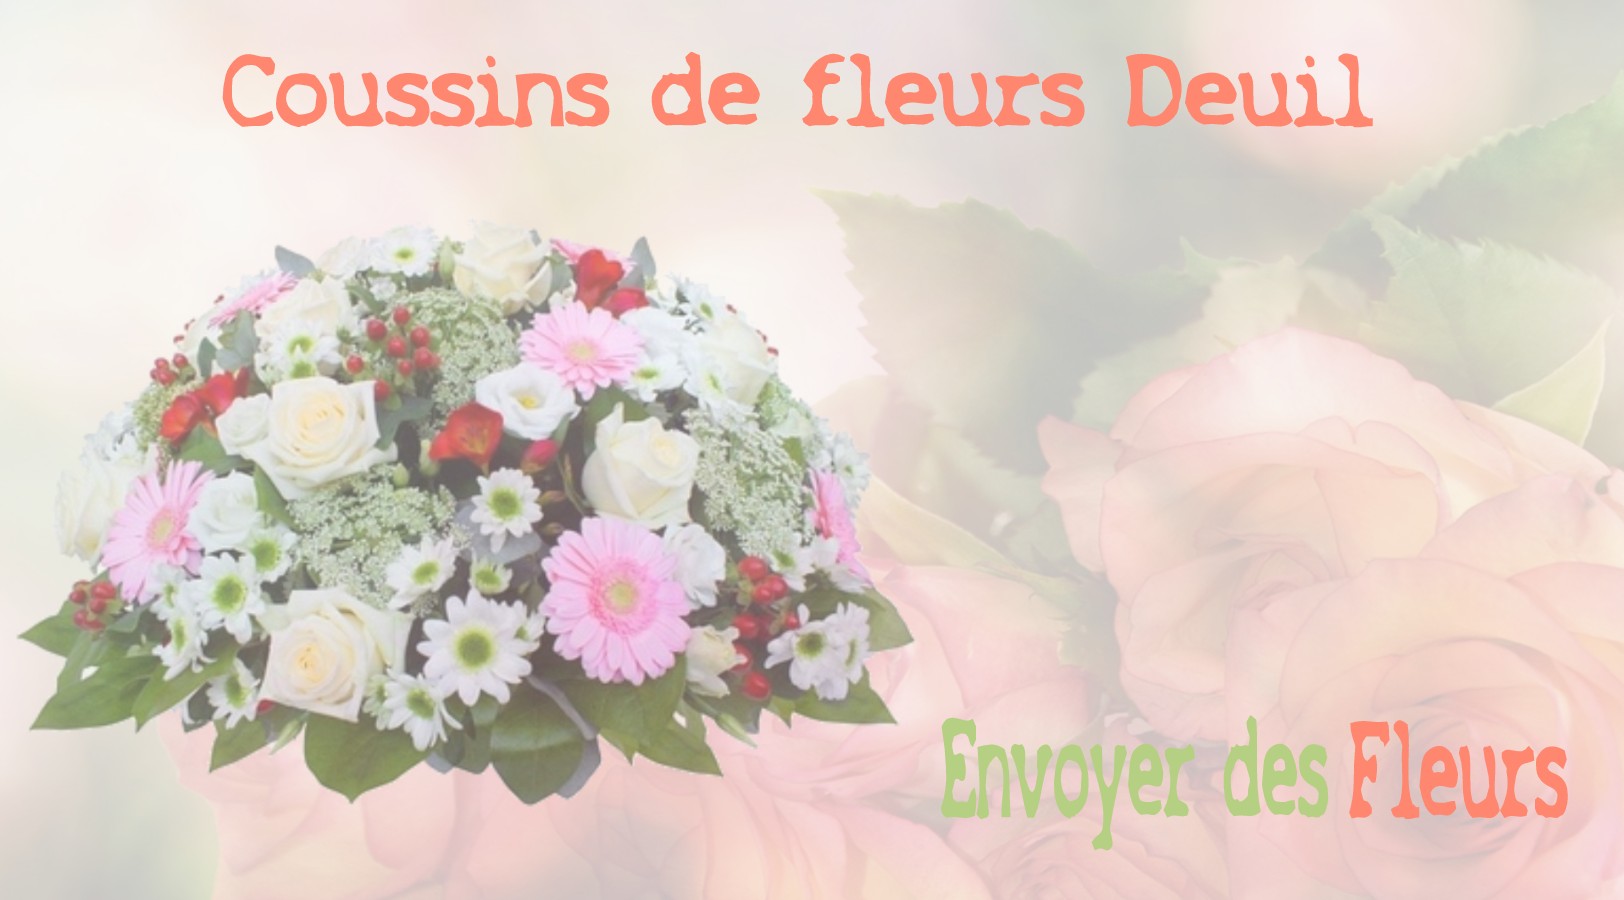 Les coussins de fleurs deuil - LIVRAISON FLEURS DEUIL A GAZERAN 78